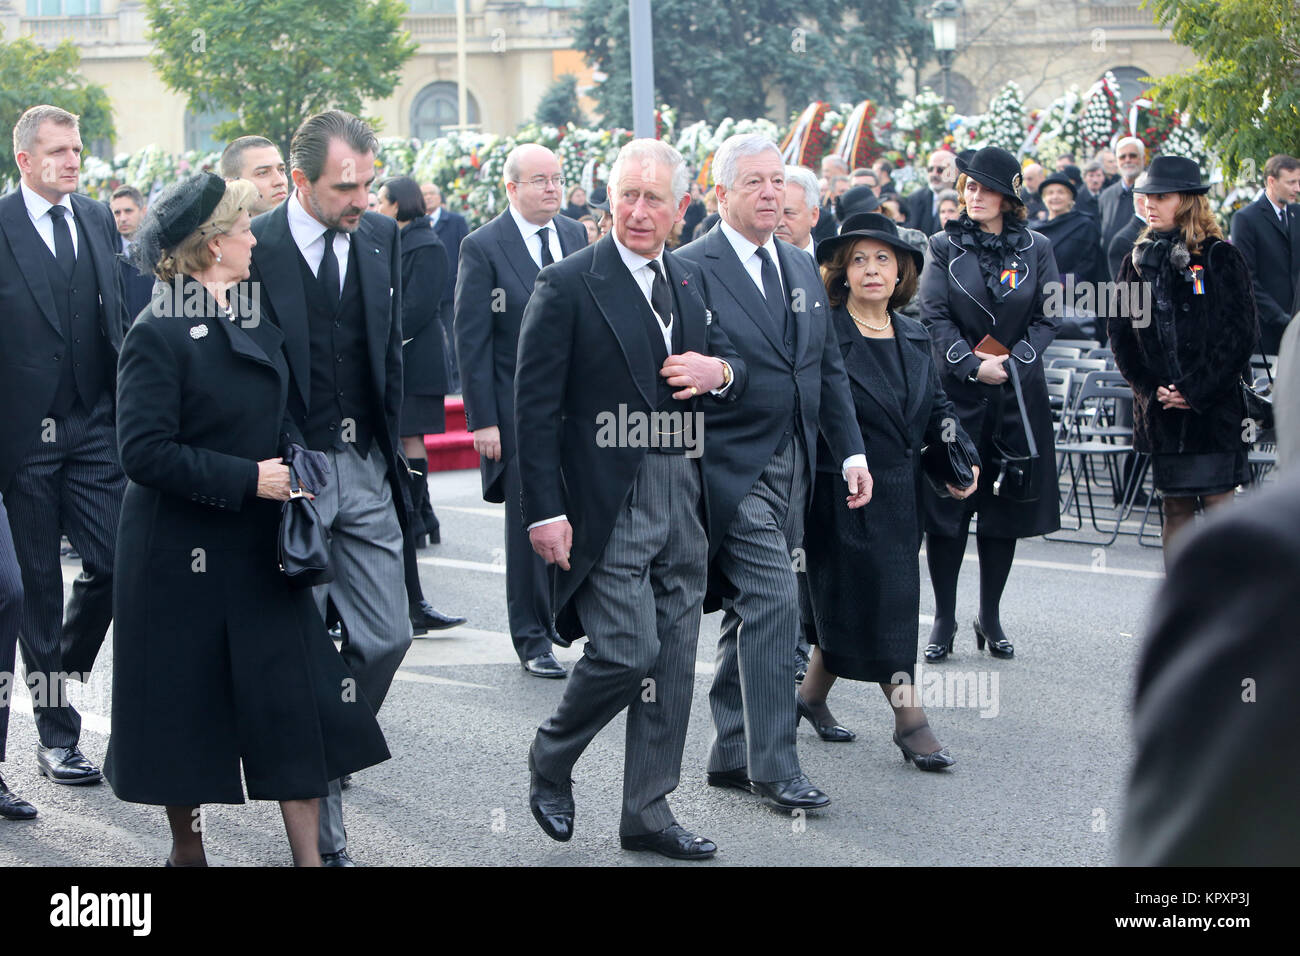 Bucarest, Rumania - Diciembre 16, 2017: el Príncipe Carlos de Gran Bretaña asiste a la ceremonia fúnebre por el difunto Rey Miguel I de Rumania en frente del antiguo Palacio Real. Foto de stock